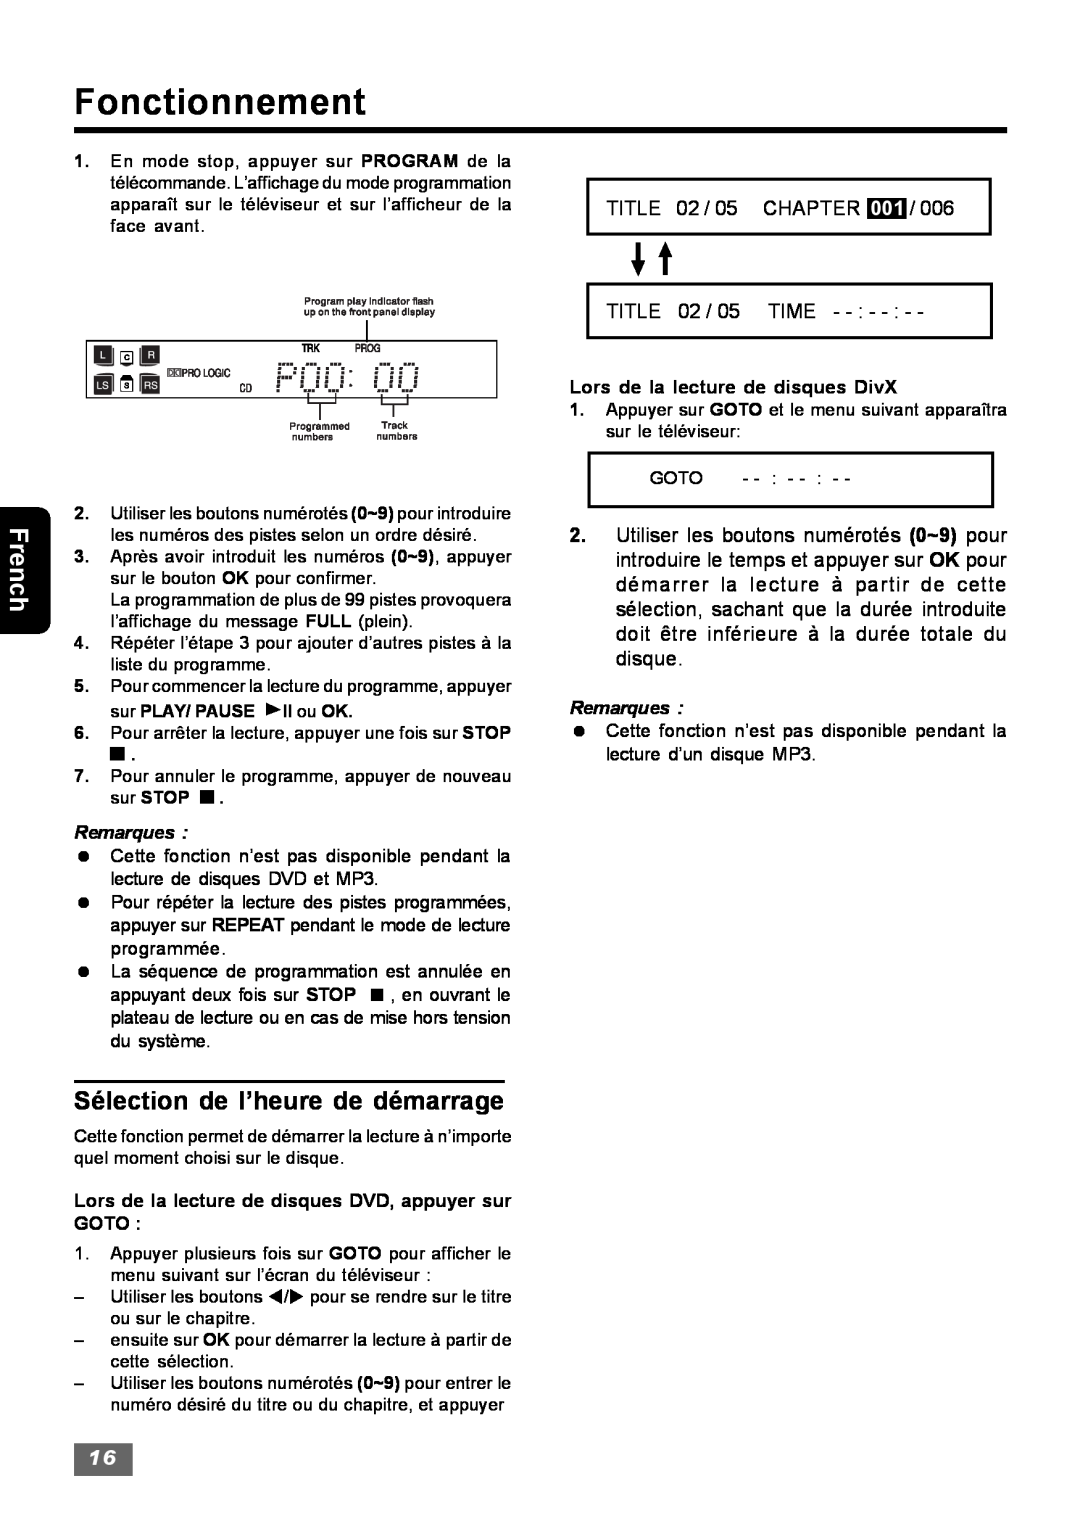 Insignia IS-HTIB102731 Sélection de l’heure de démarrage, Fonctionnement, French, TITLE 02 / 05 / TITLE 02 / 05 TIME 